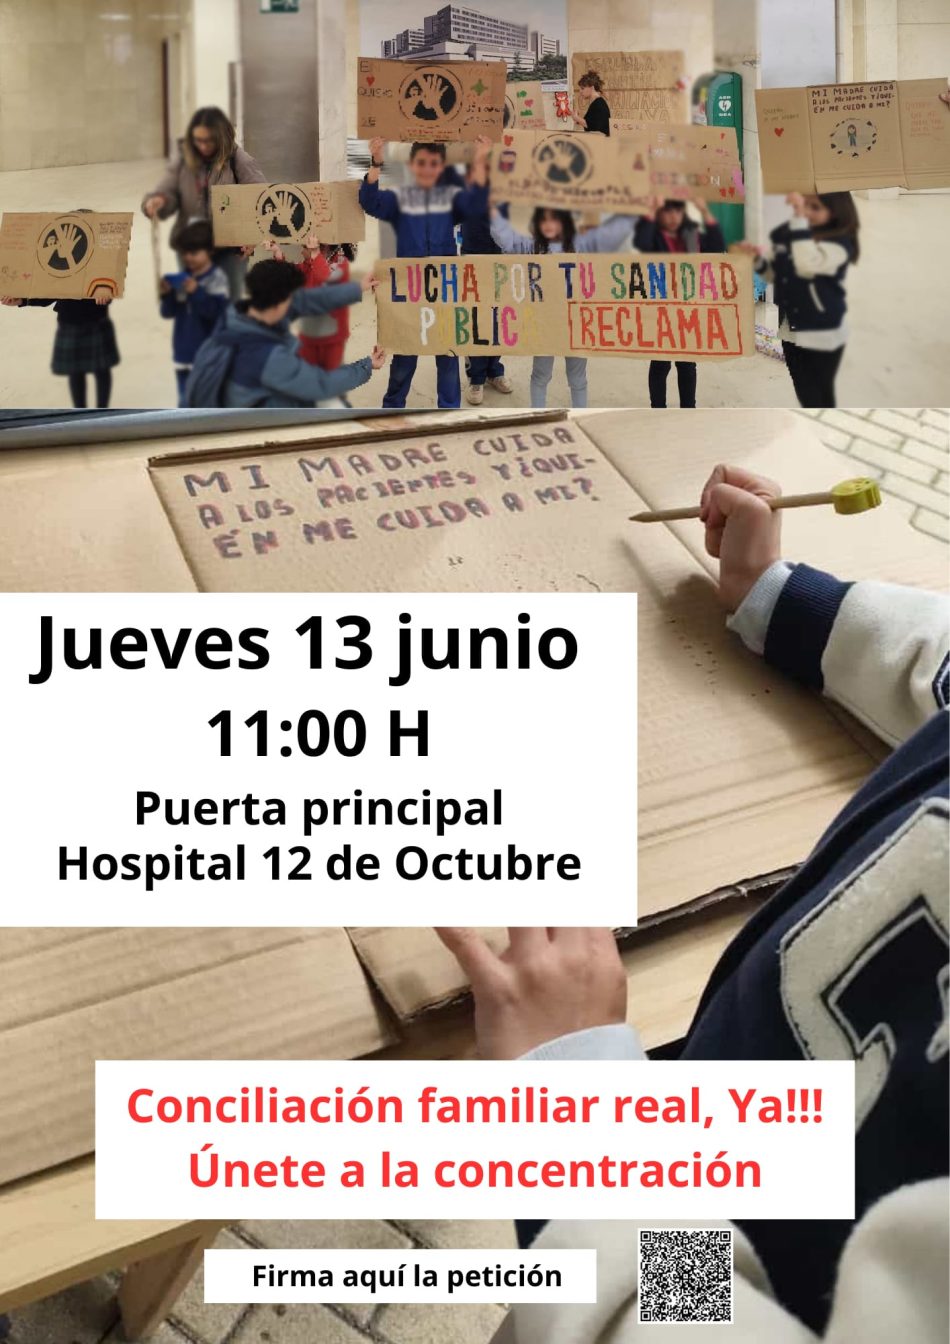 Personal del Hospital 12 de Octubre Convoca Concentración por su derecho a Conciliación Familiar